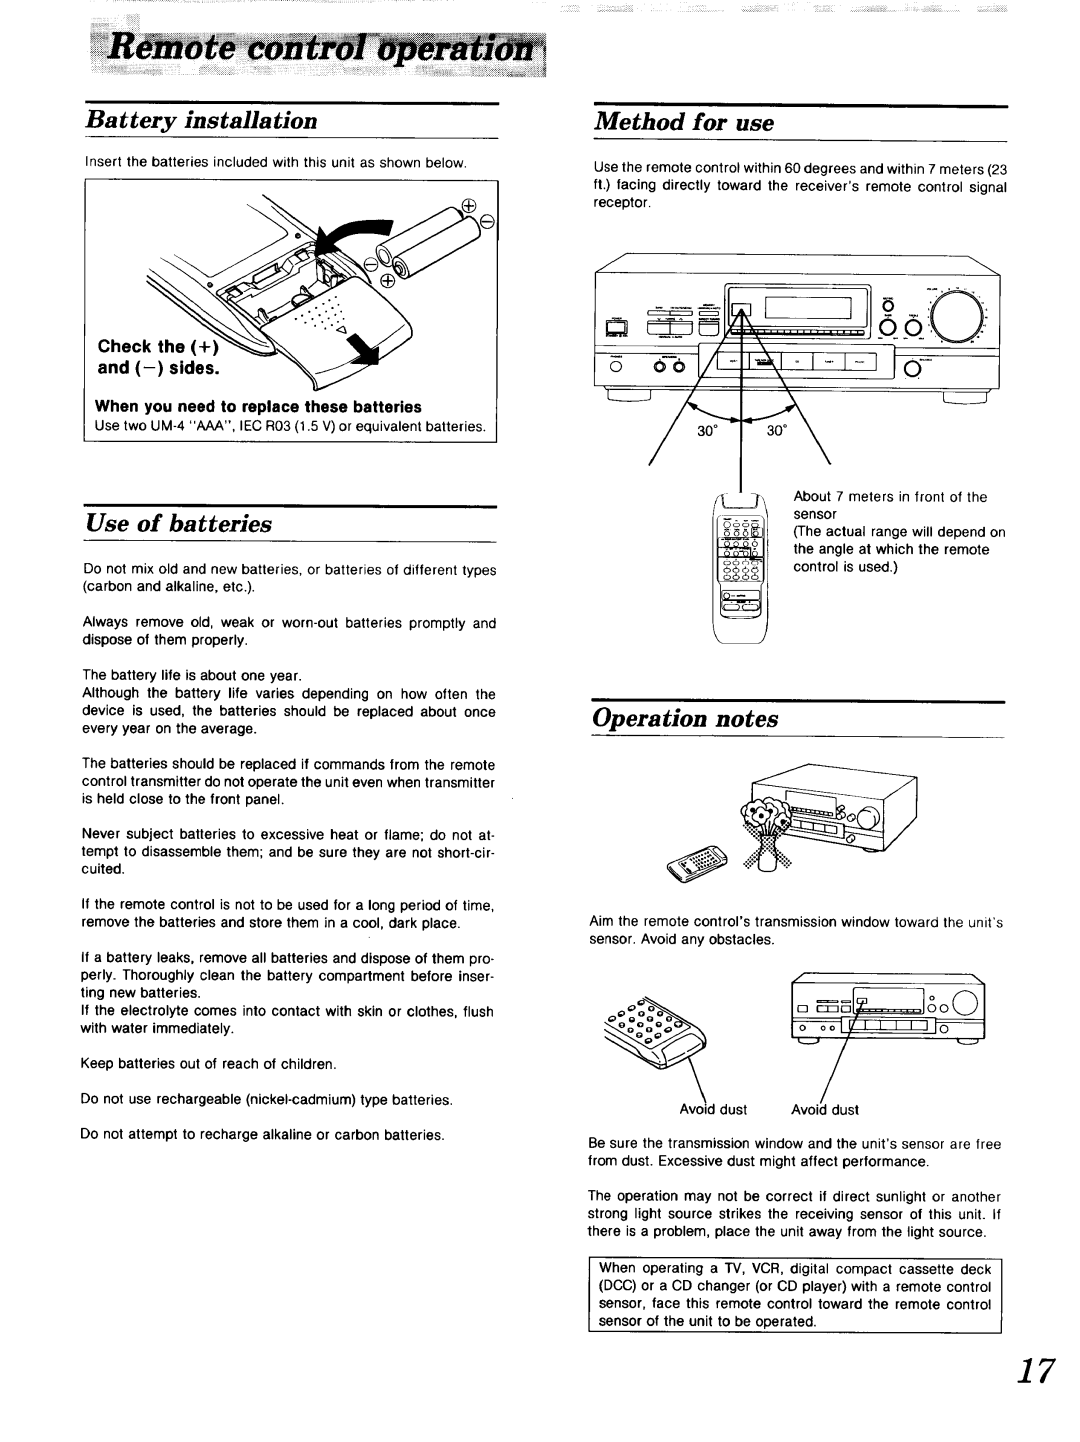 Technics SA-GX 19O l ==lsoOl, ilililililiiiii,i,iiiiiiiiiiiilii, Battery installation, Use of batteries, Method for use 